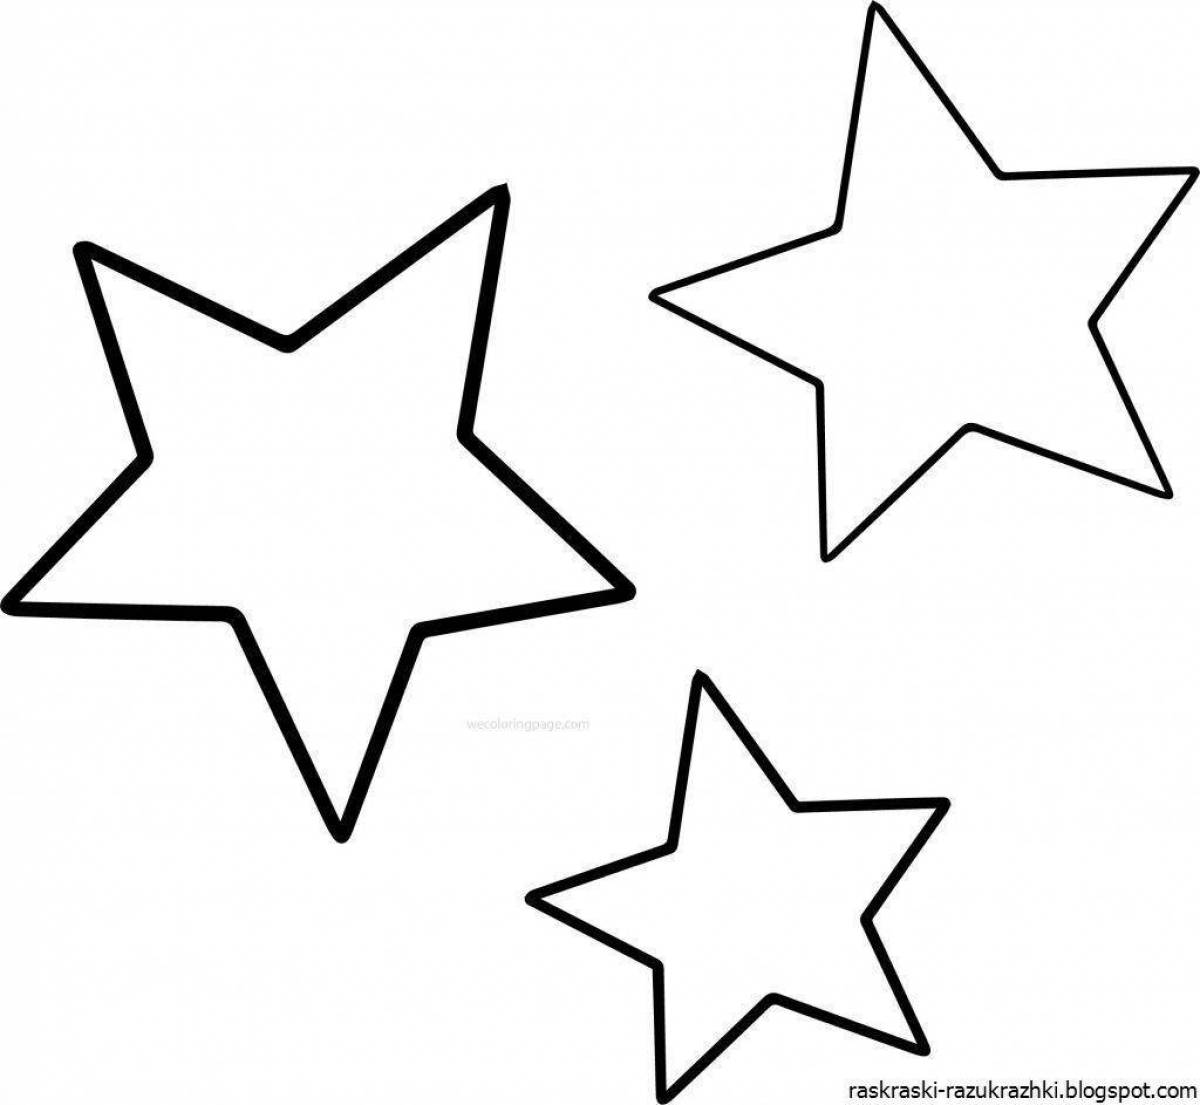 Веселая раскраска звездочка для дошкольников 3-4 лет